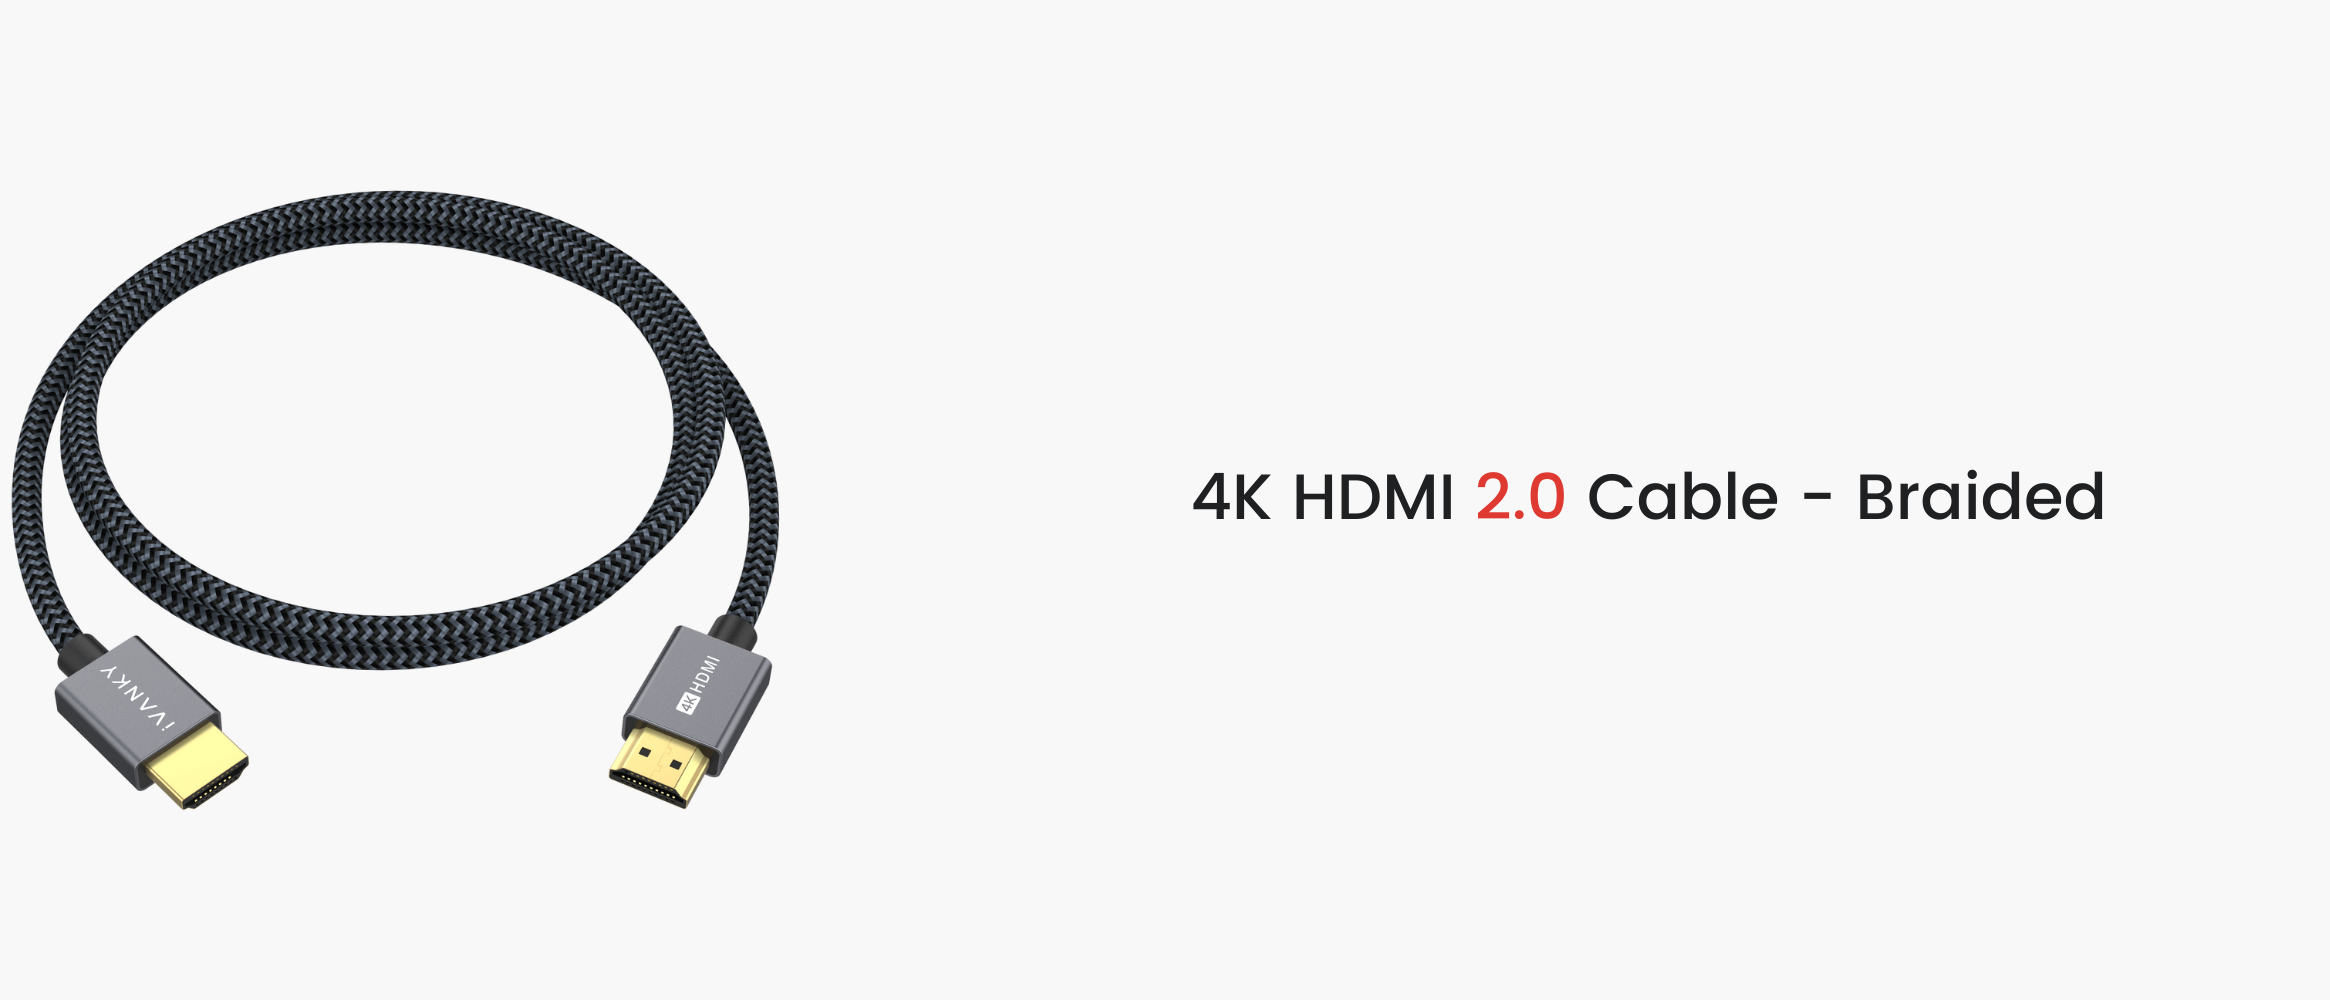 Qu'est-ce que HDMI ARC ? - Coolblue - tout pour un sourire